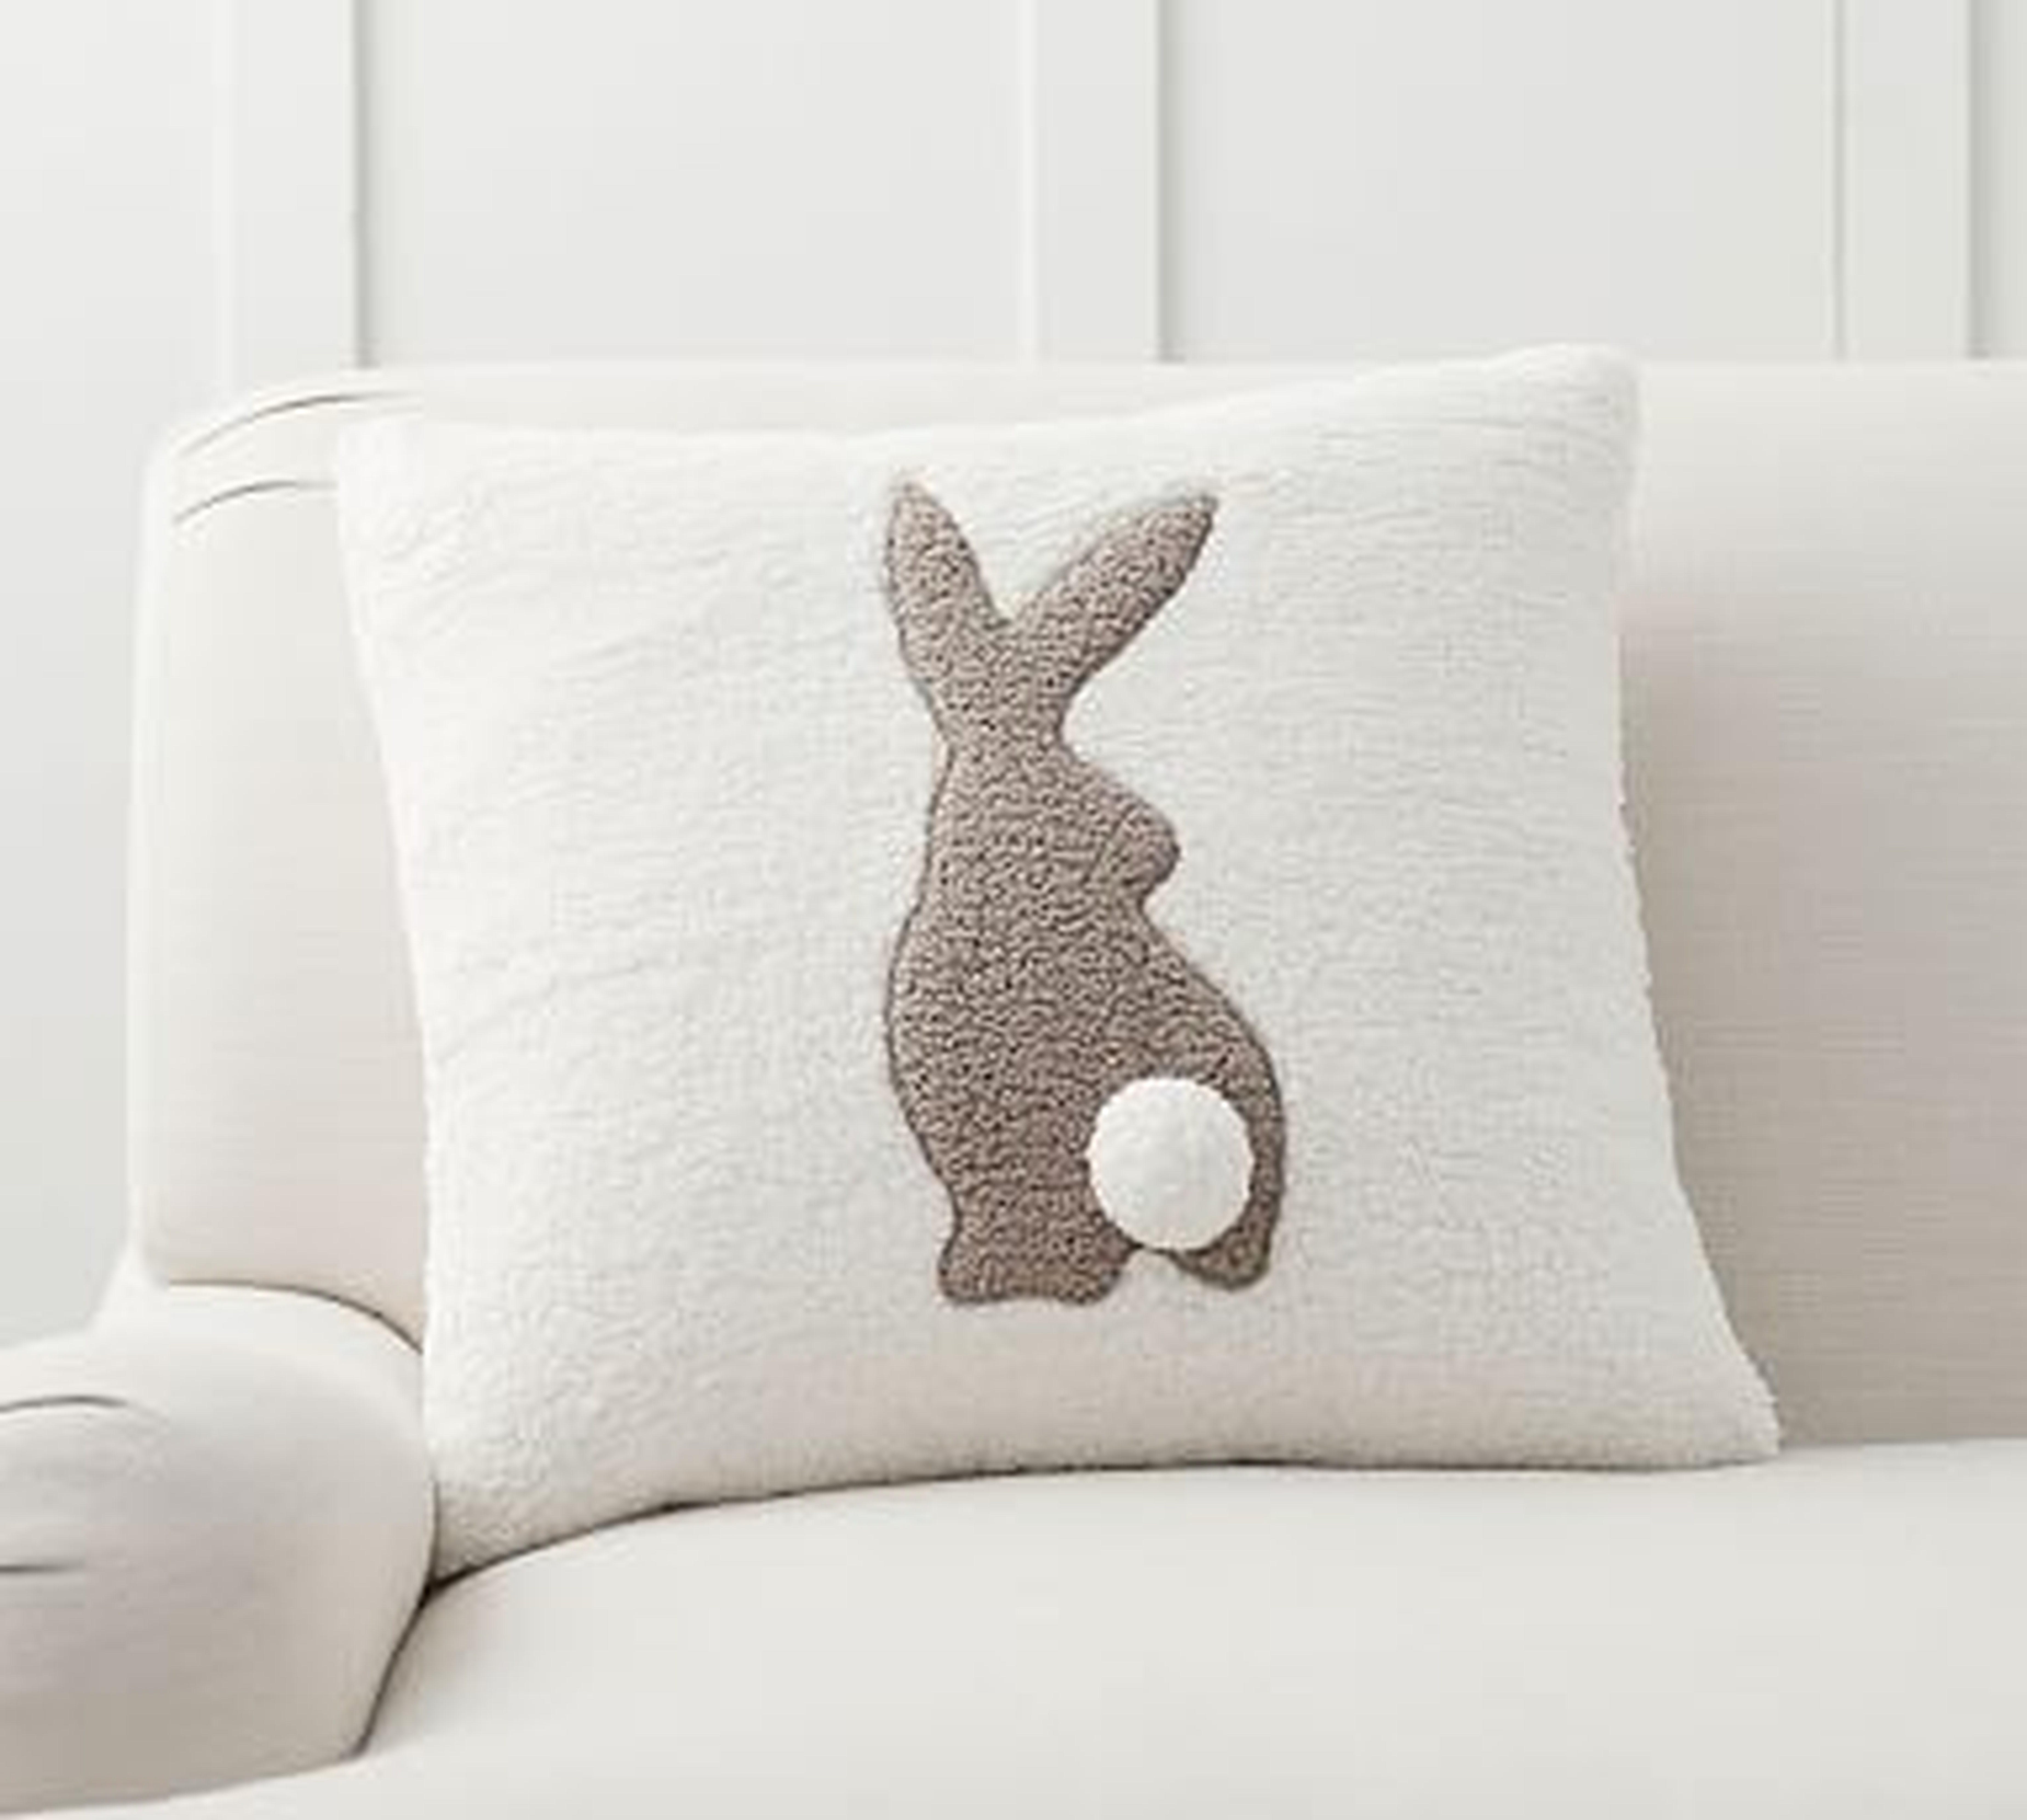 Pom Pom Bunny Pillow Cover, 20", Neutral Multi - Pottery Barn